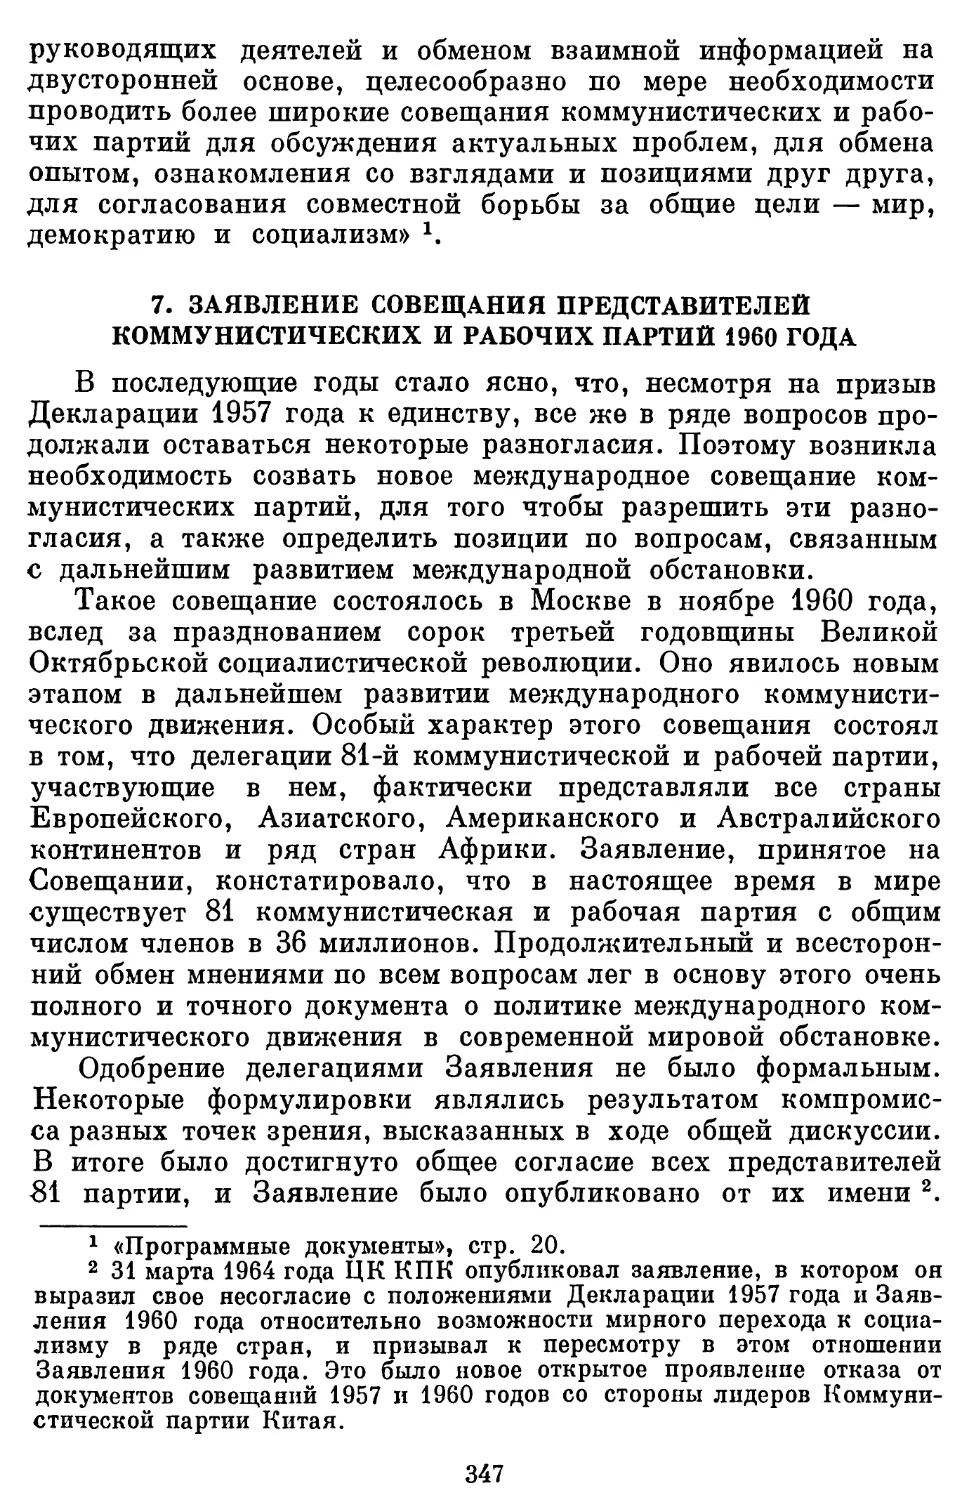 7. Заявление Совещания представителей коммунистических и рабочих партий 1960 года